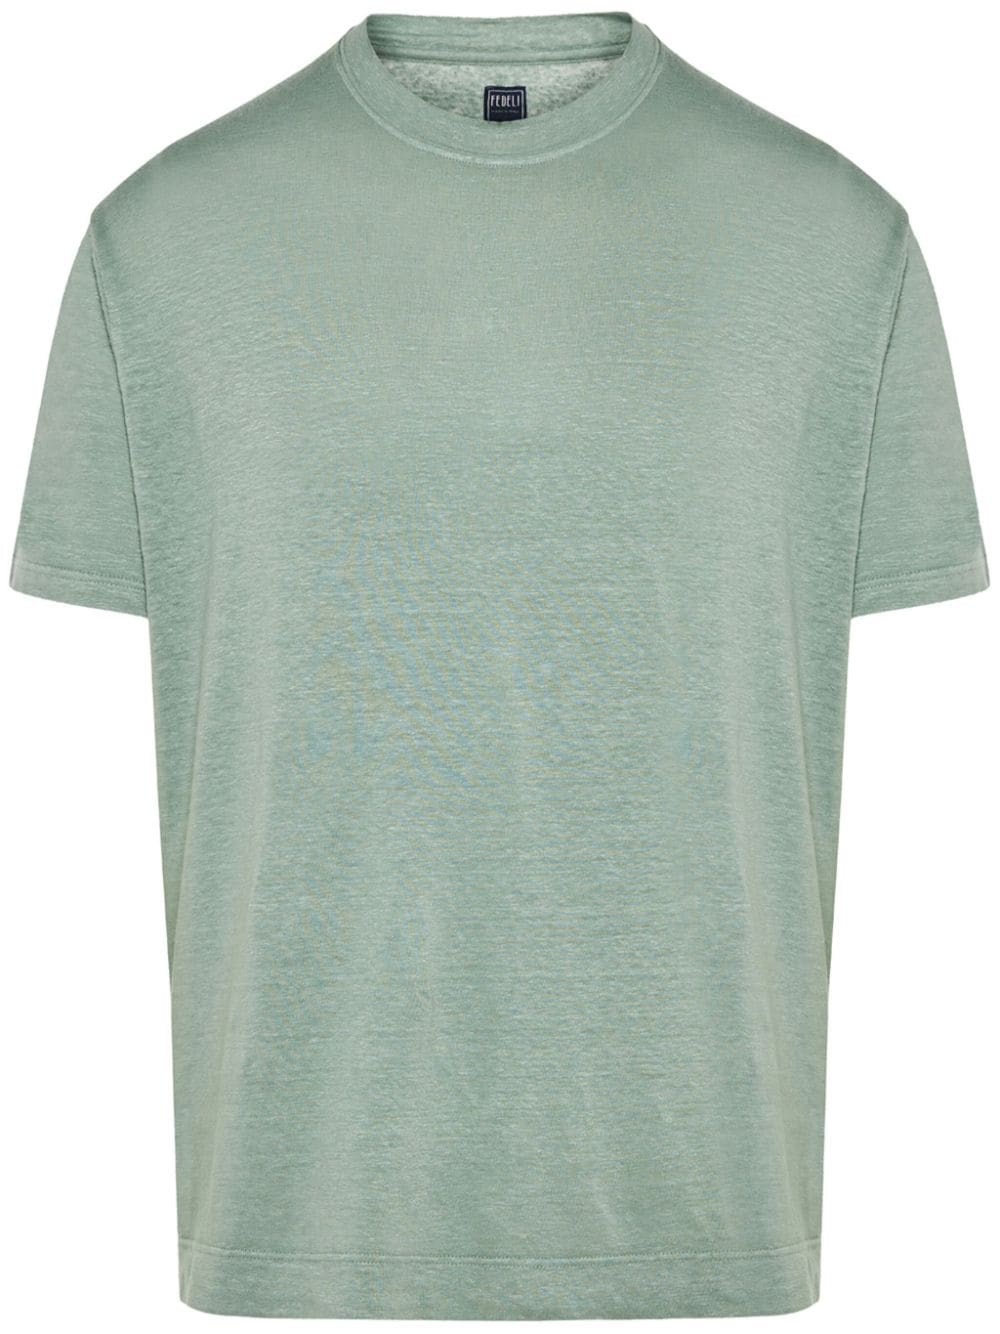 Fedeli Extreme cotton T-shirt - Green von Fedeli